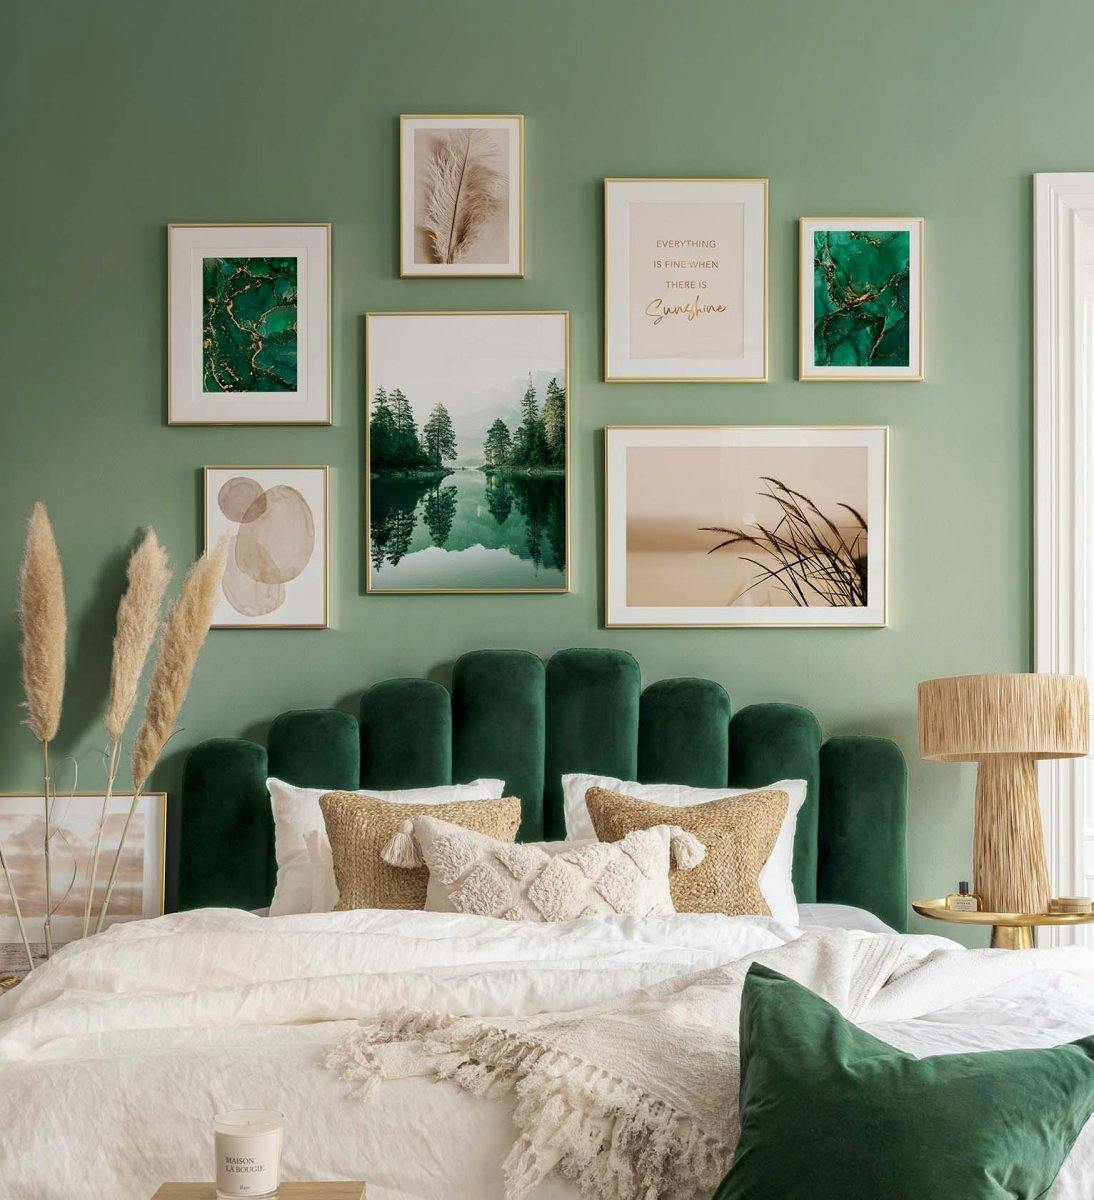 Galéria fal zöld és bézs színű természeti poszterekkel, arany kerettel hálószobához